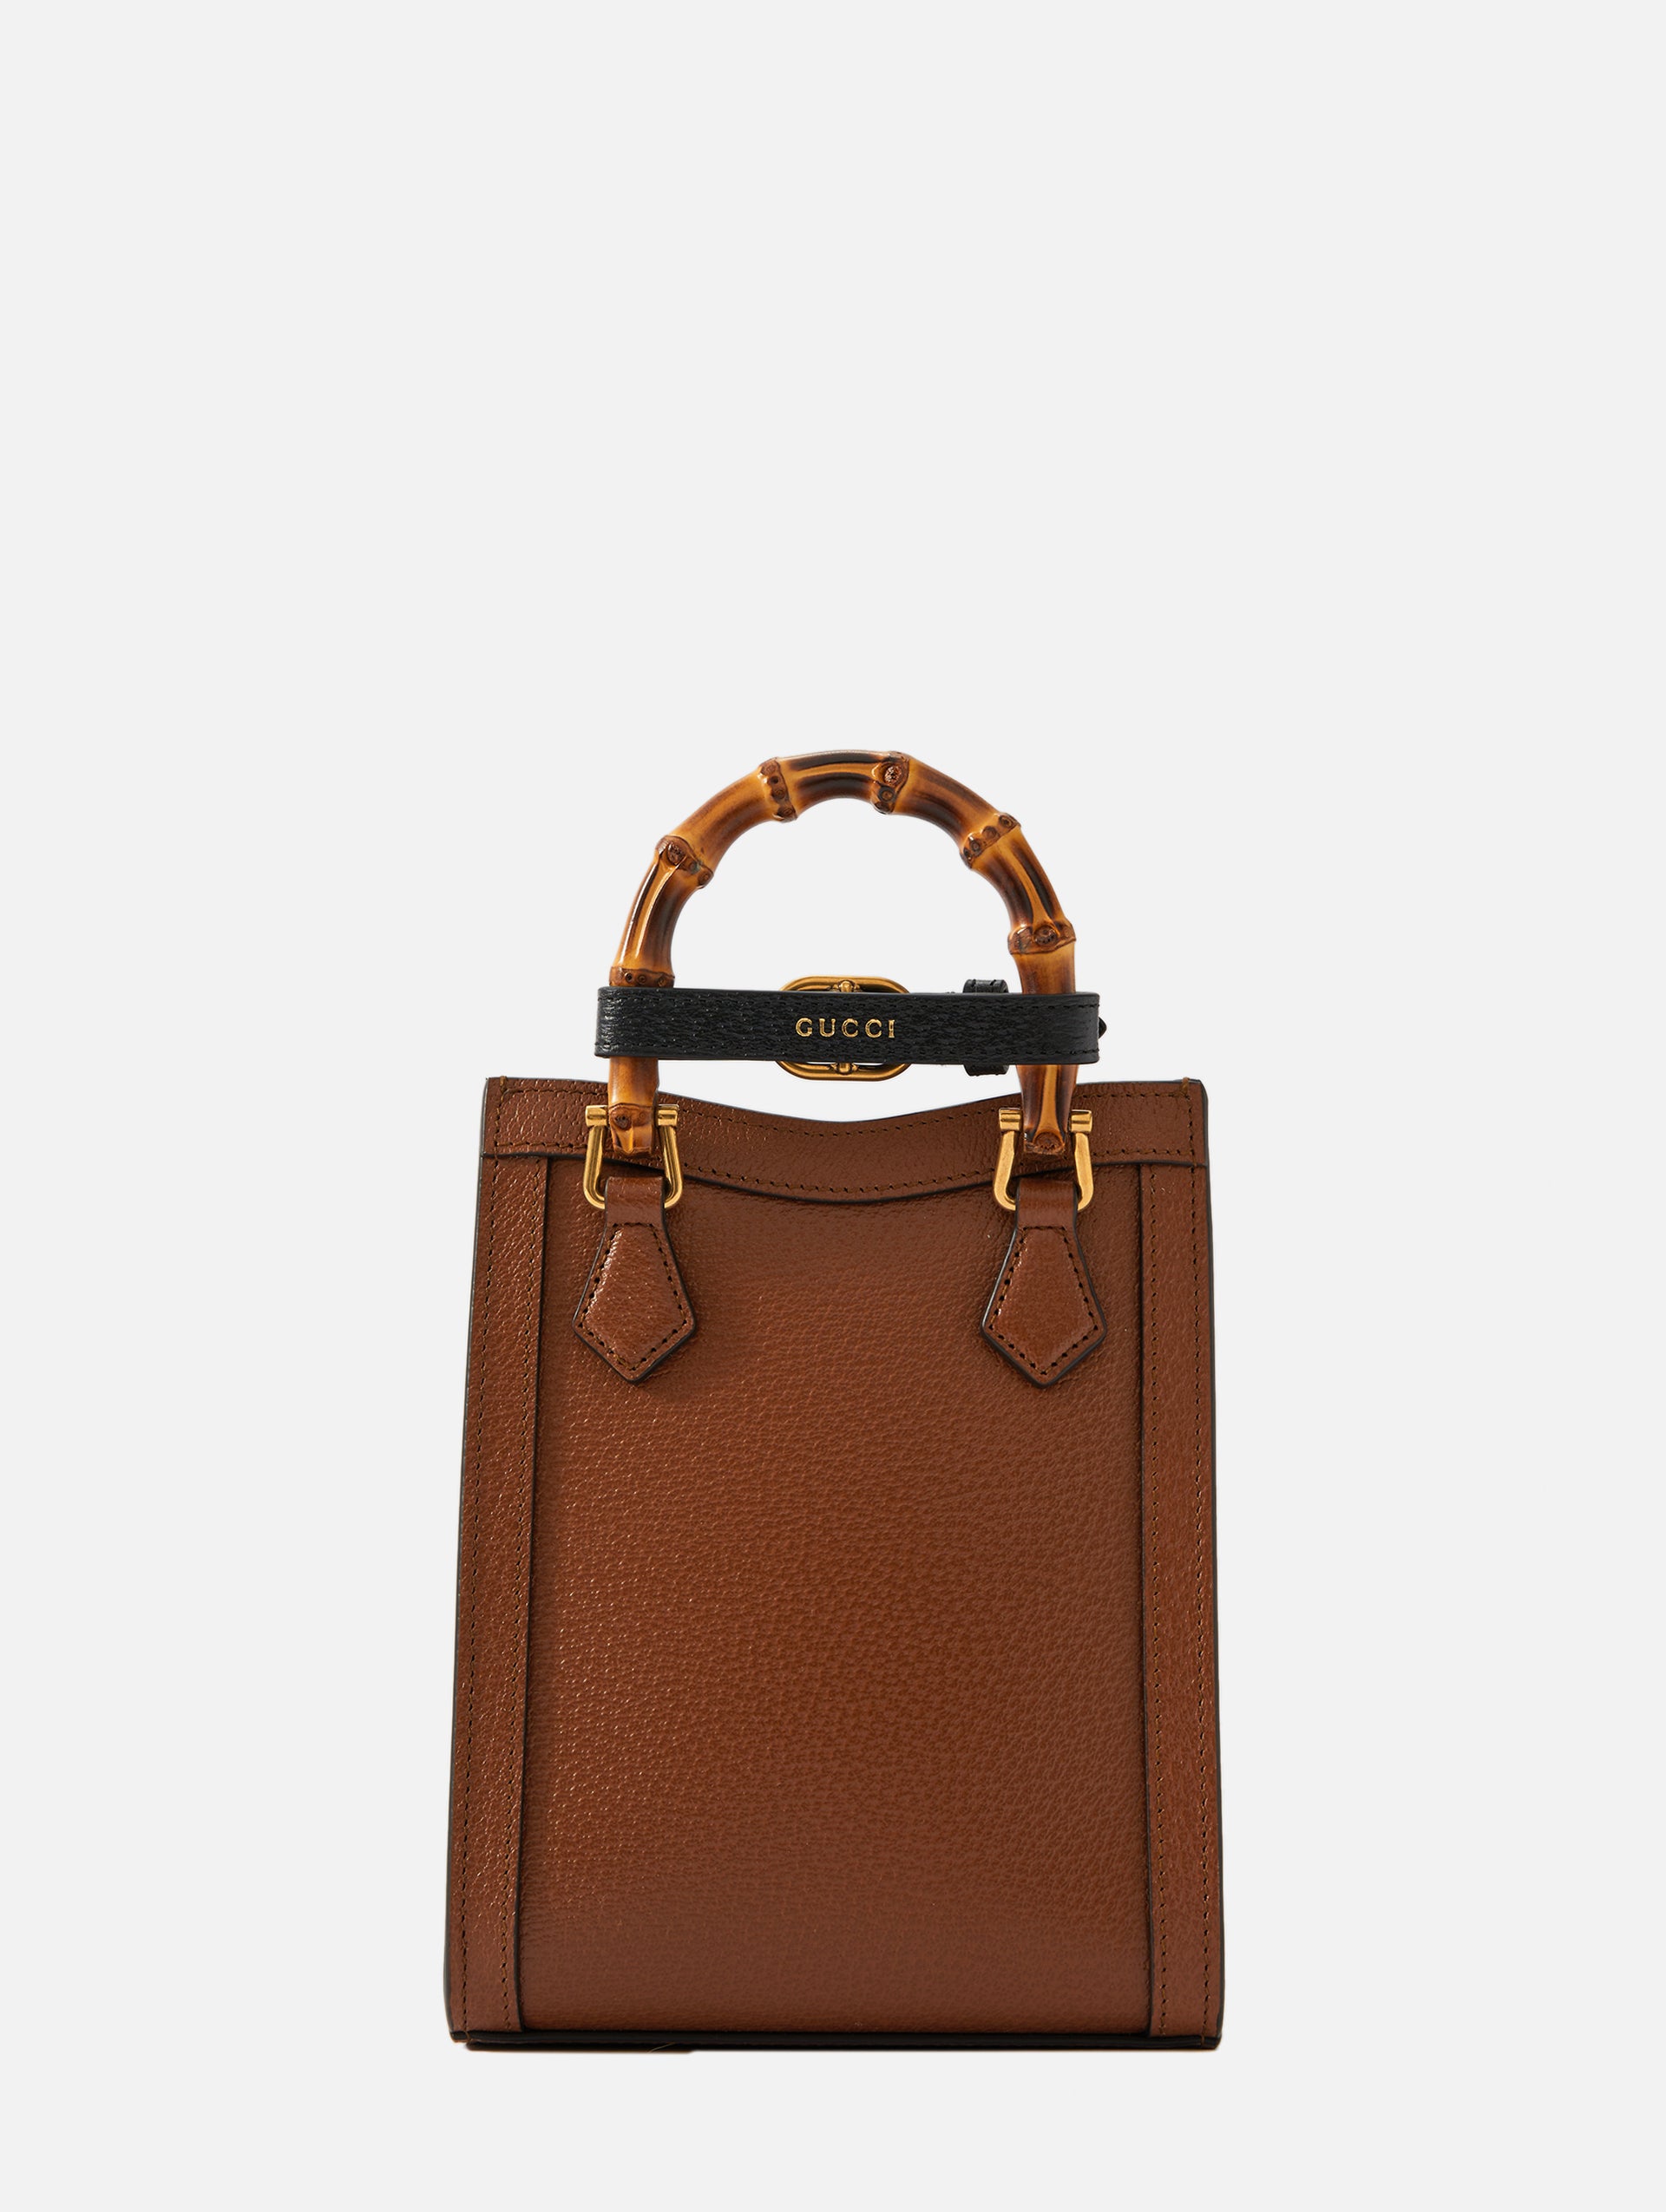 Gucci Diana mini tote bag in cuir leather